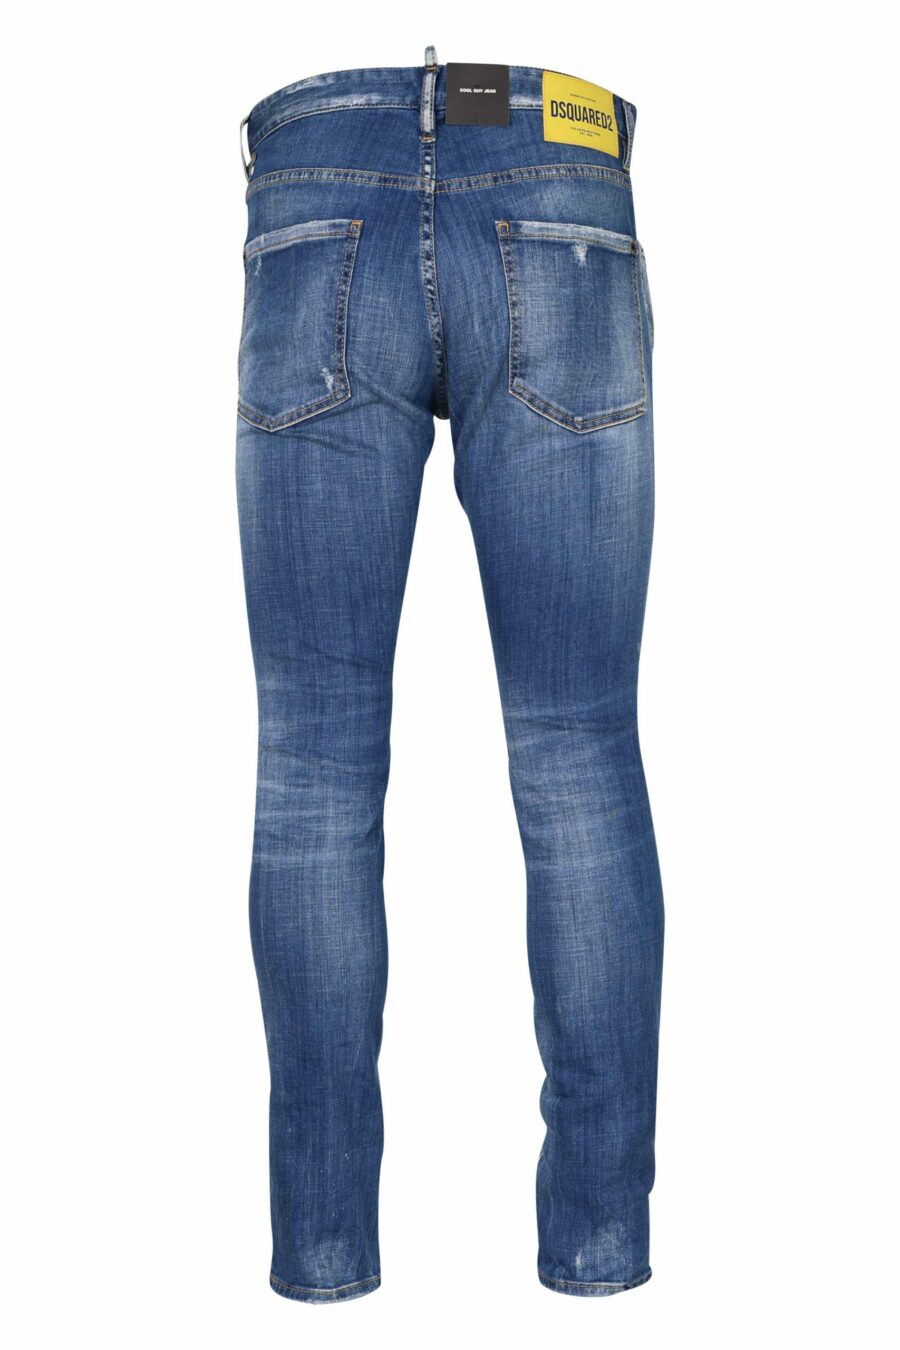 Hellblaue "cool guy jean"-Hose mit Halbschlitzen und halb zerschlissen - 8054148311414 2 skaliert